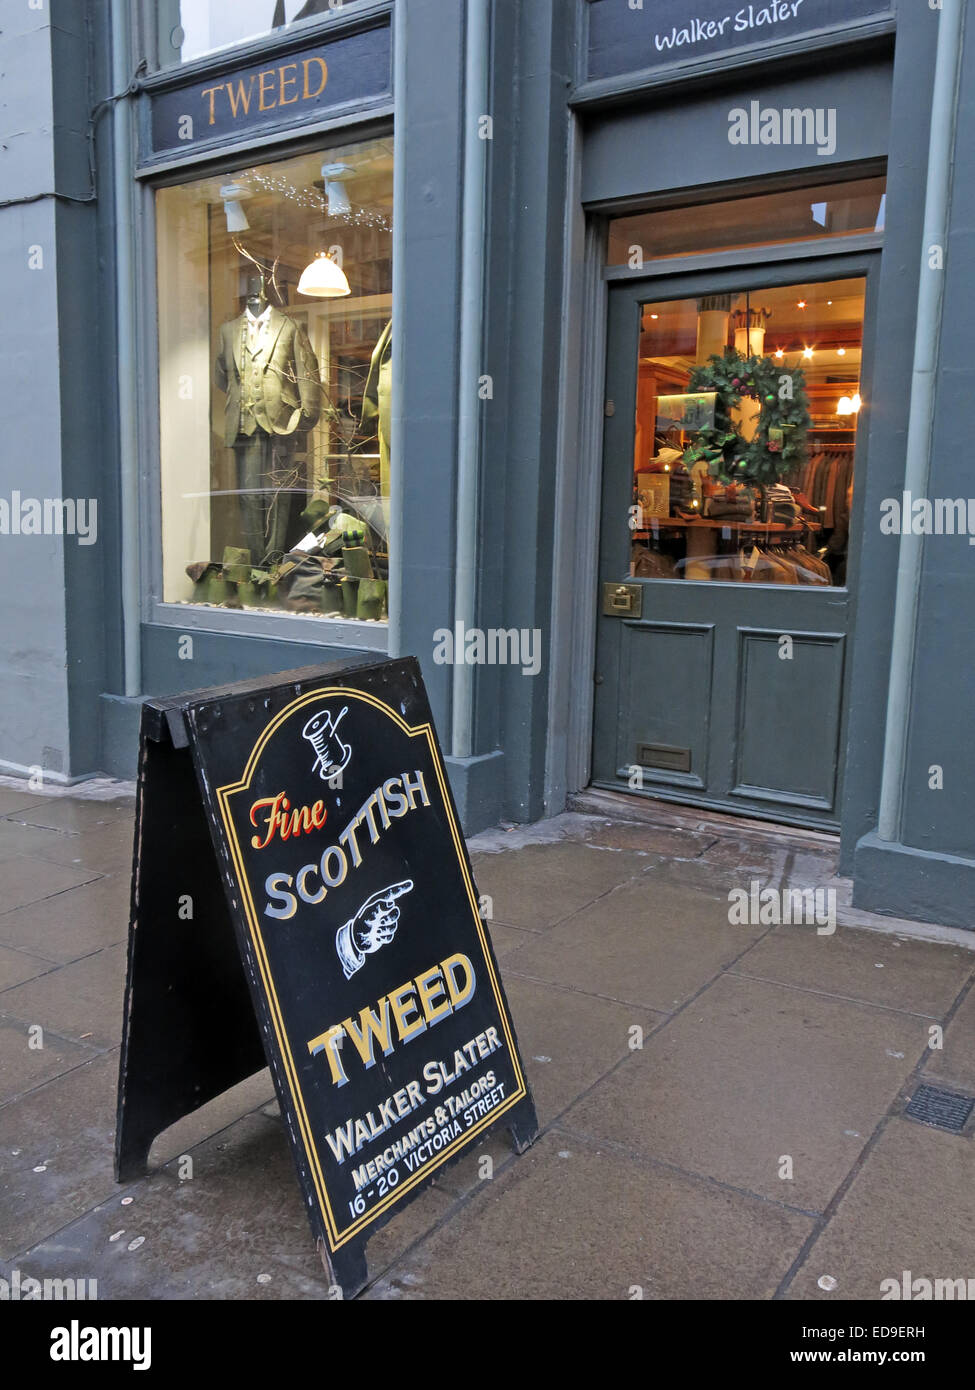 Le tweed écossais d'Edimbourg Ecosse Boutique Victoria St Banque D'Images